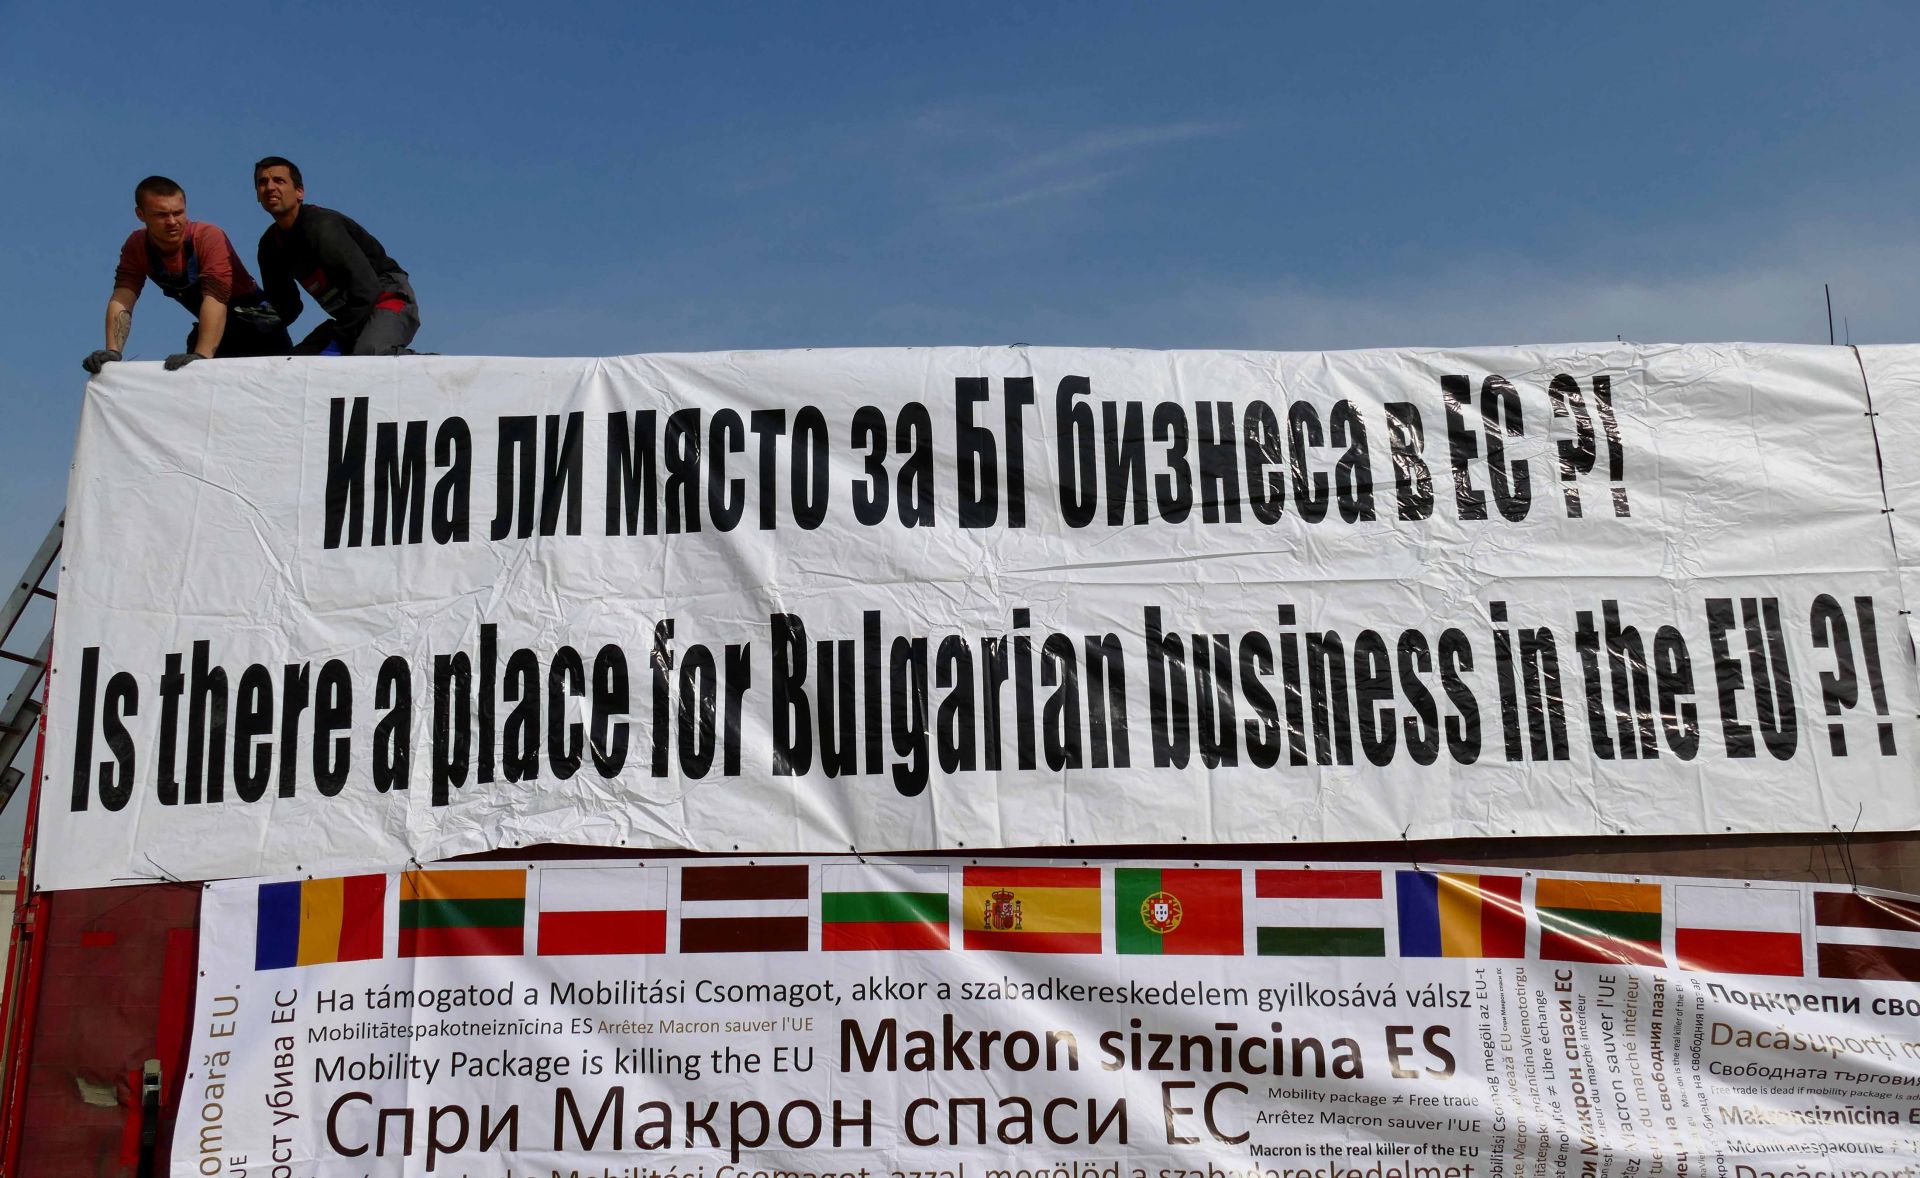 Българските превозвачи искат изтегляне на пакета Мобилност, но Евроепейският парламент отхвърли тази възможност. Остават прегворите за по-добри за българския бизнес условия 